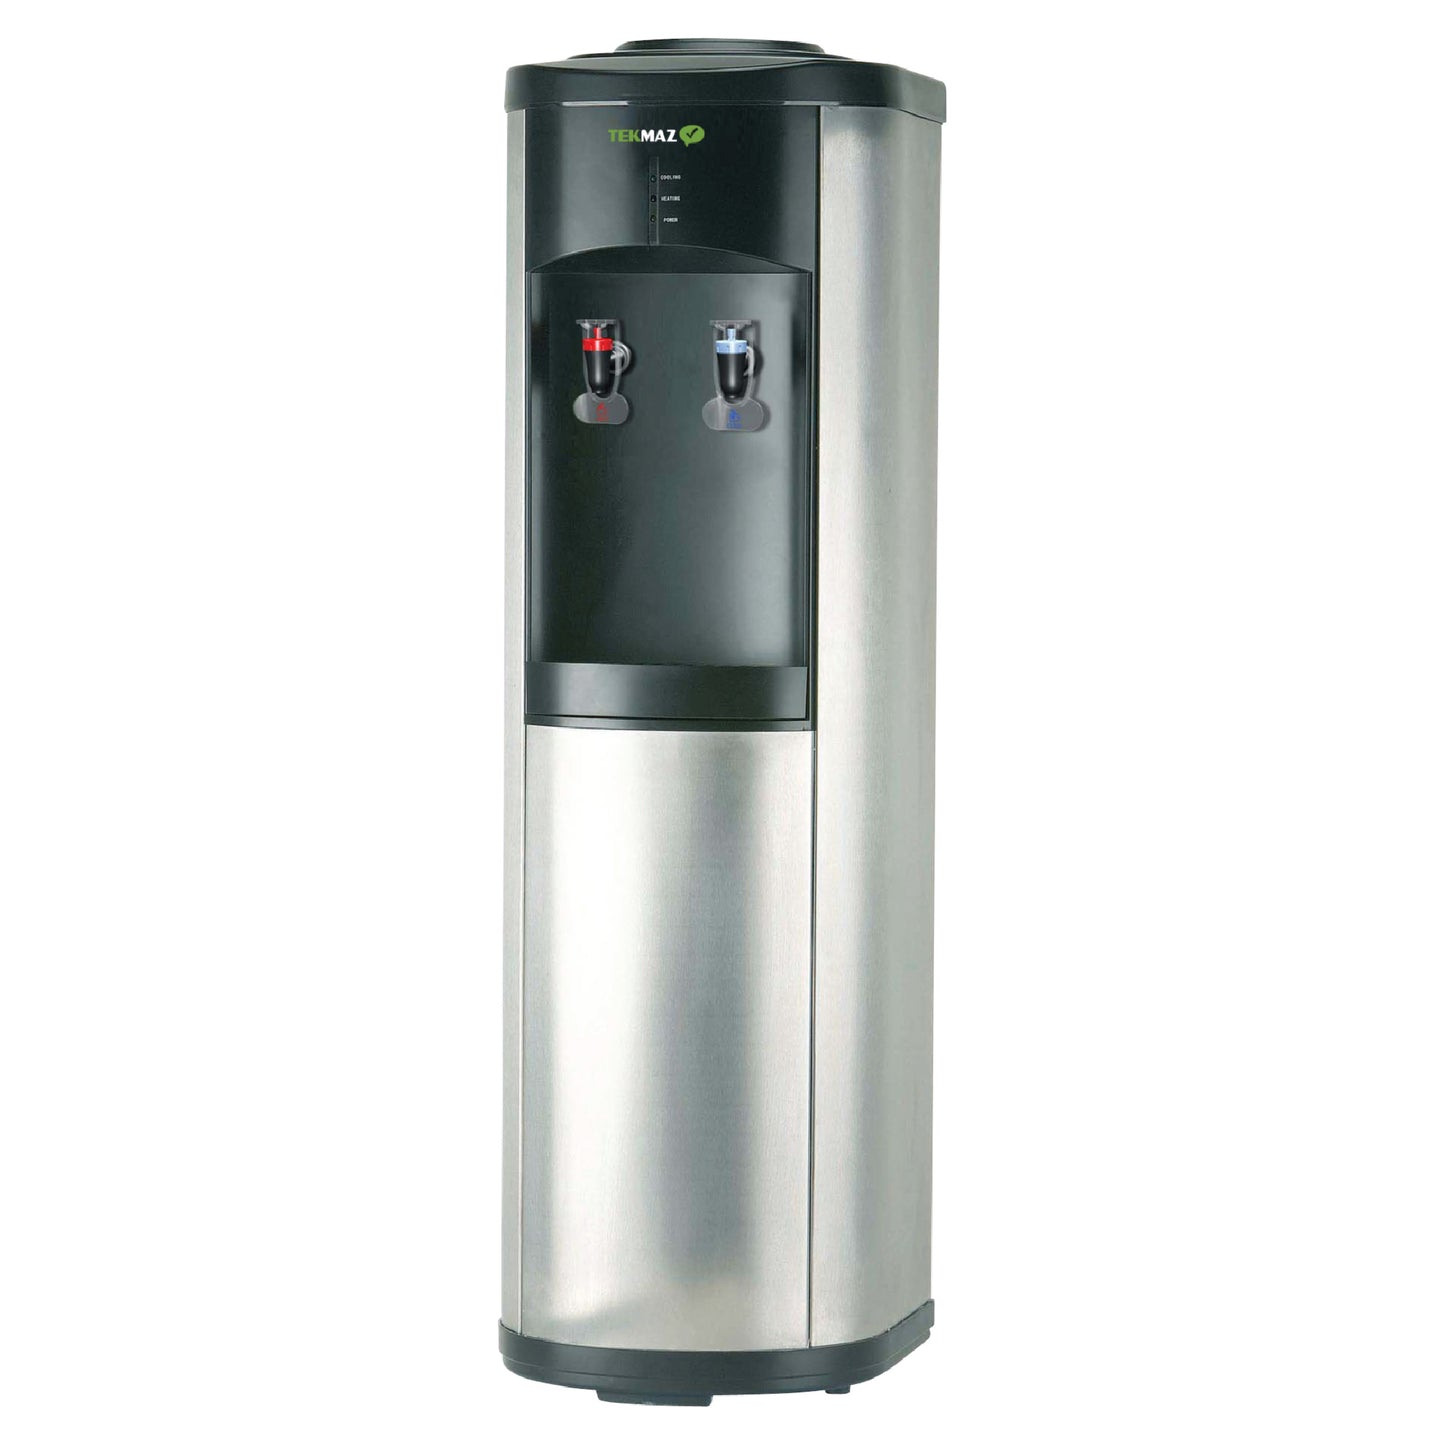 TEKMAZ Stand Water Dispenser NAS-SS01